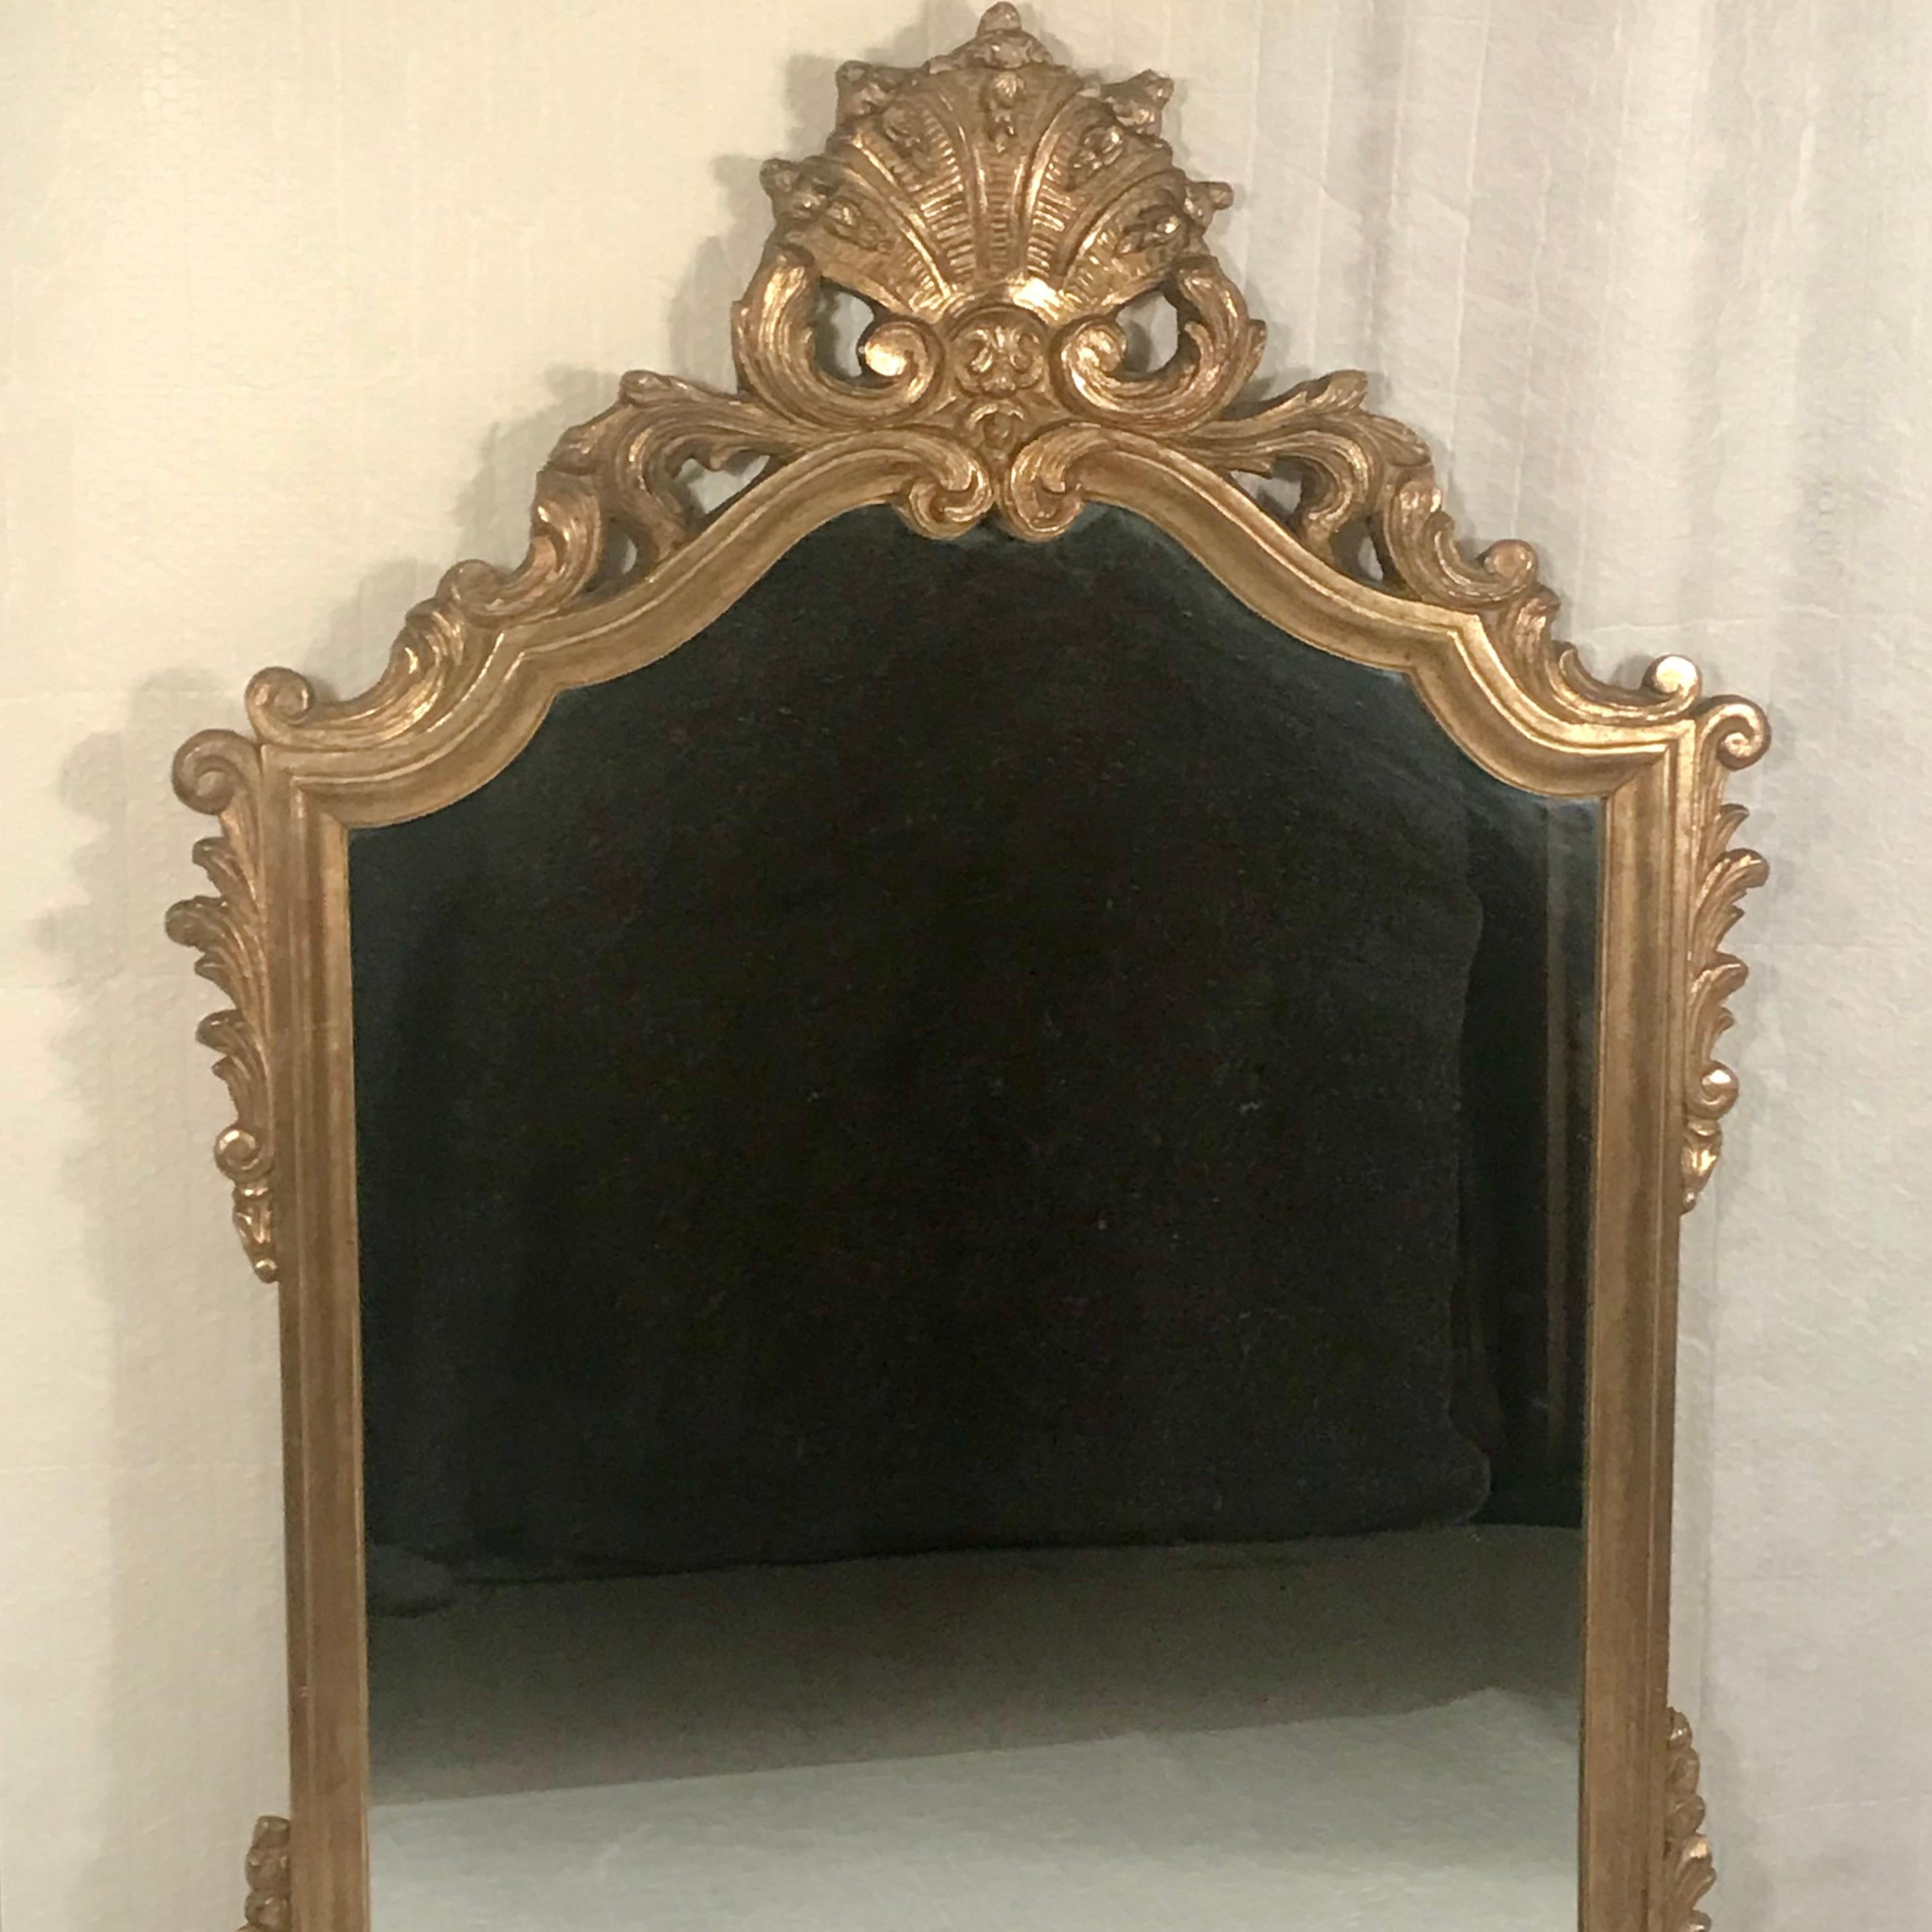 Transformez votre espace de vie avec notre superbe miroir mural de style baroque, doté d'un luxueux cadre en bois doré qui respire l'opulence et la sophistication. Orné d'un saisissant motif de coquillage complété par des feuilles d'acanthe ornées